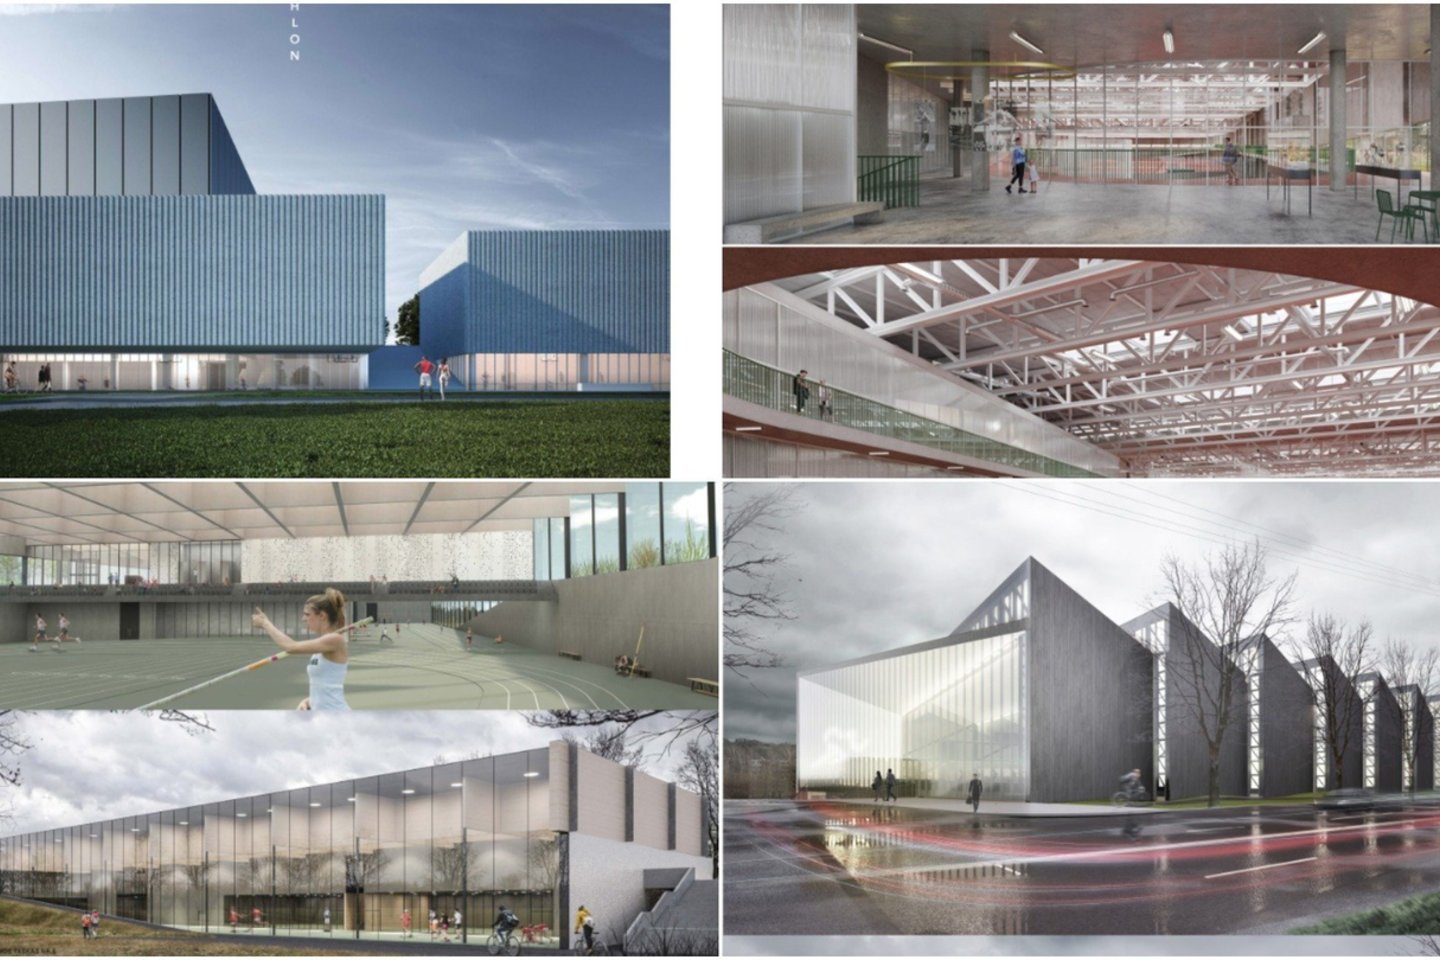 Lengvosios atletikos maniežo Žirmūnų g. 1h, Vilniuje, atviro architektūrinio projekto konkursui pateikti 21 projektinis pasiūlymas.<br>vizual.